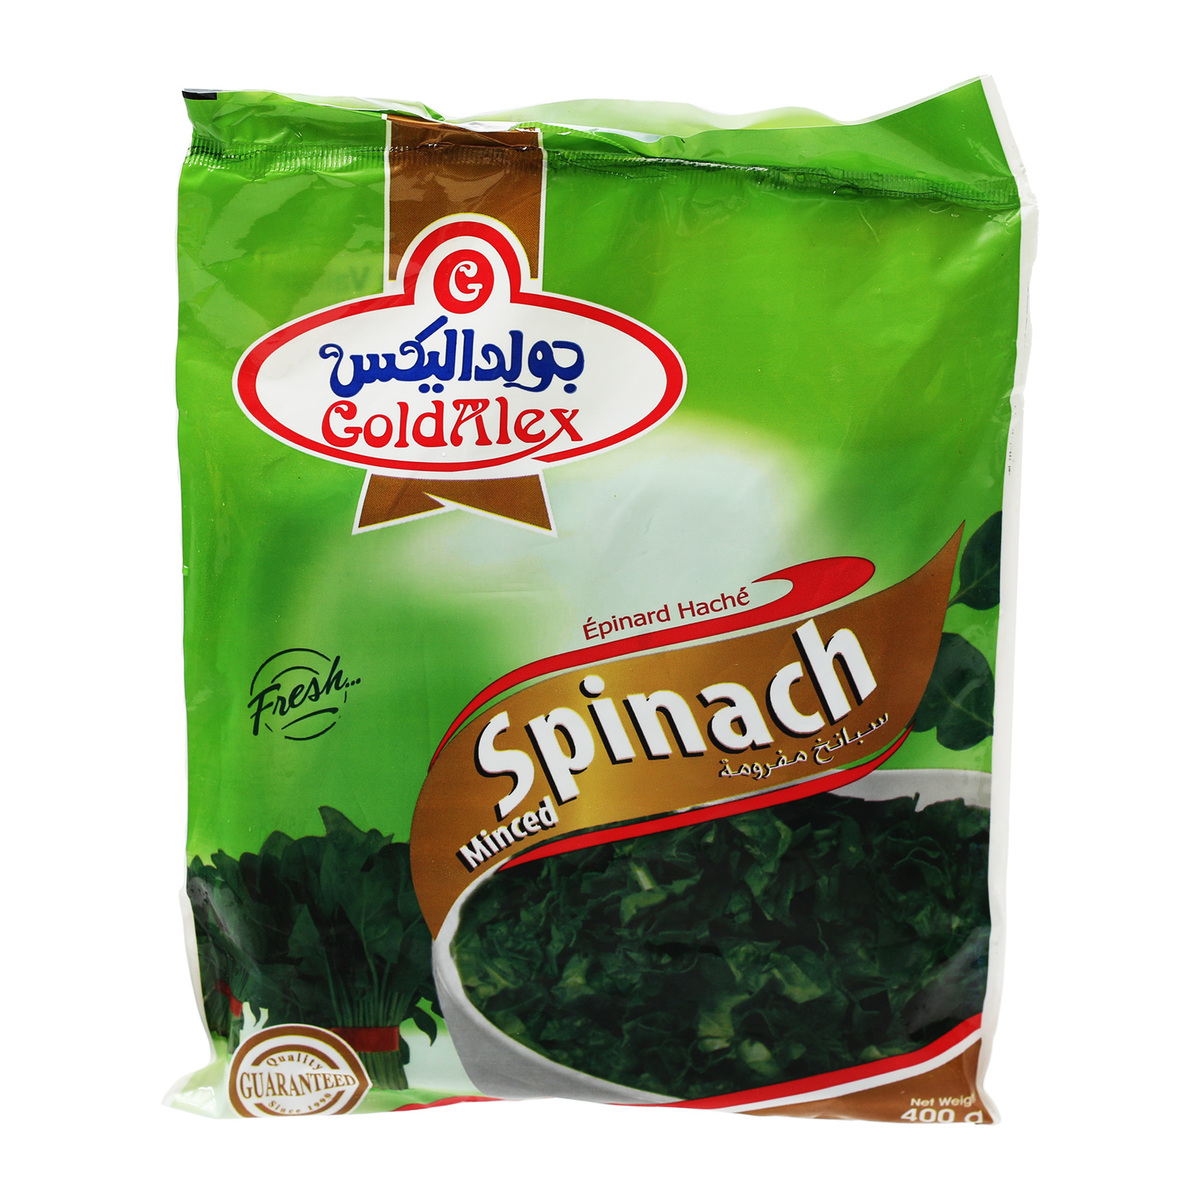 Goldalex Spinach 400g